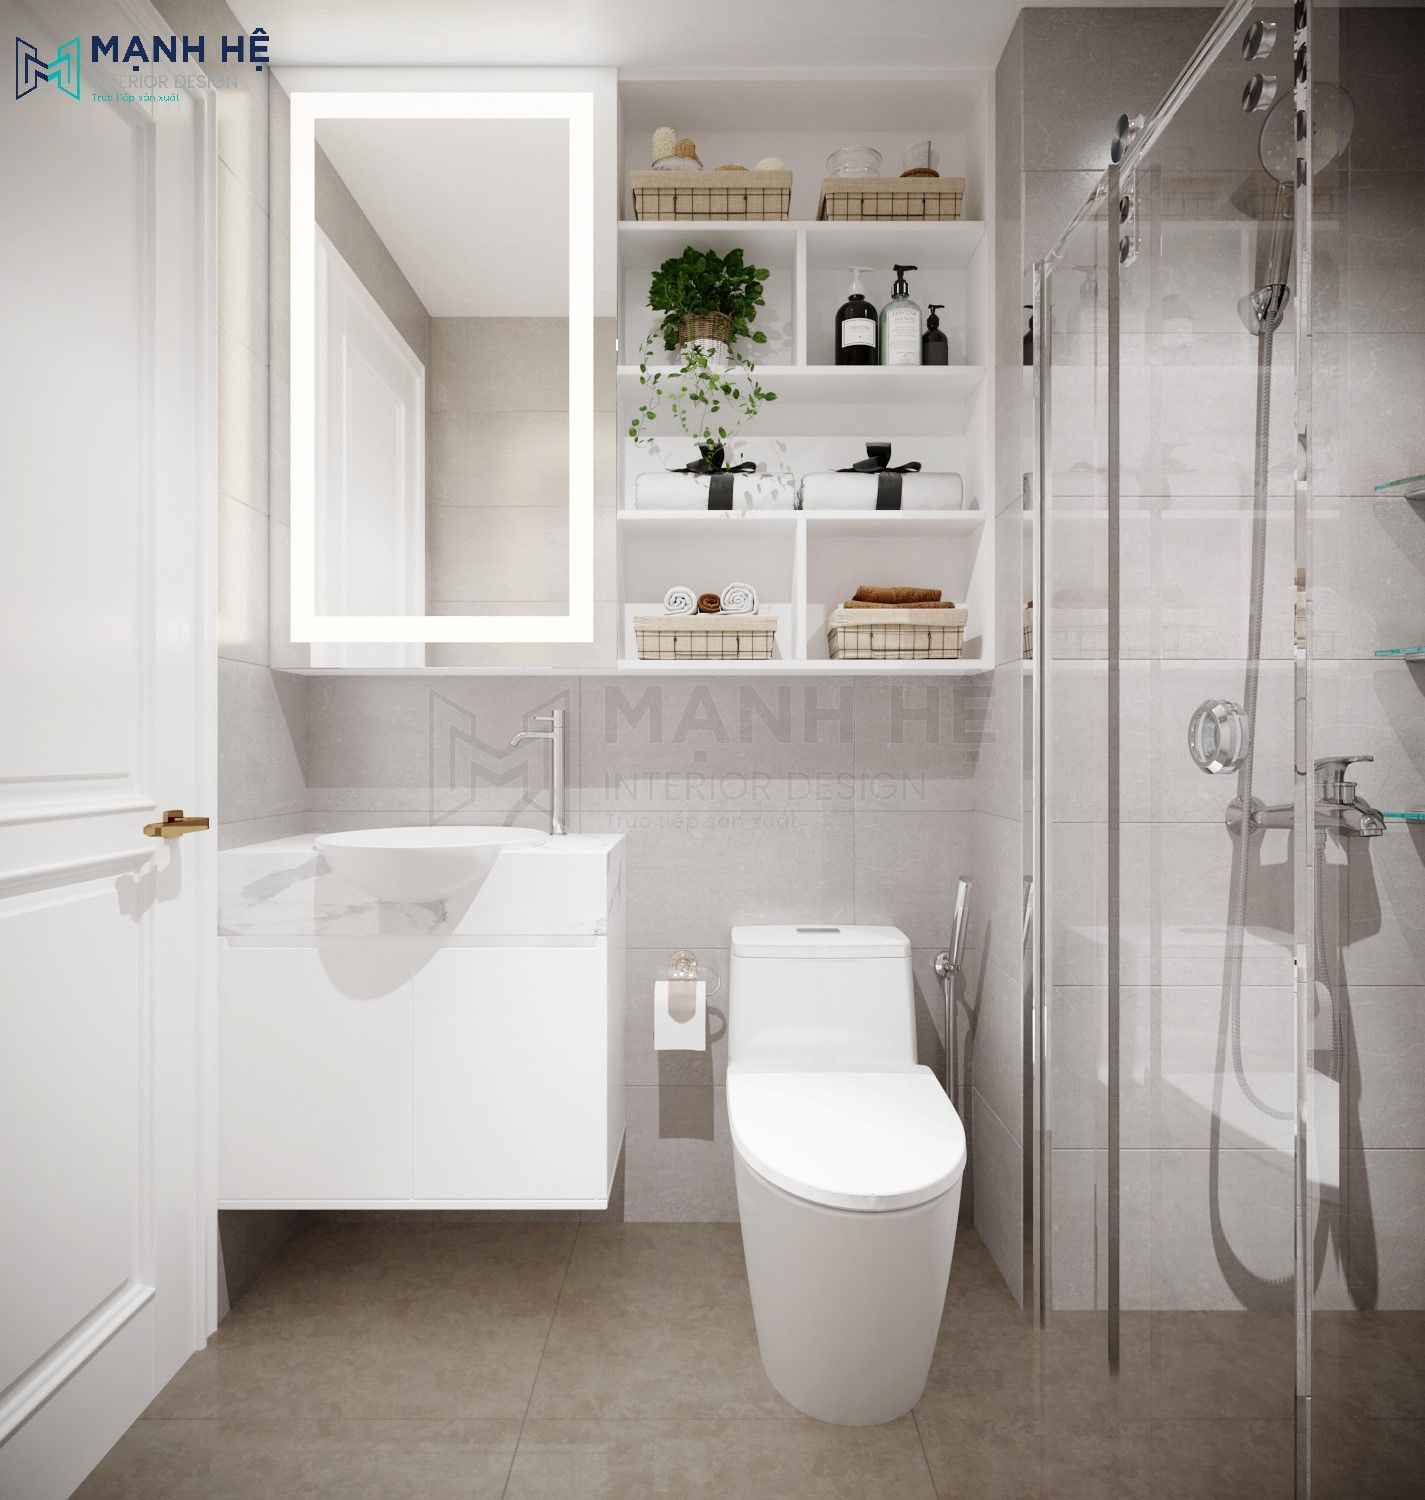 Mẫu thiết kế phòng tắm kết hợp nhà vệ sinh chung với hệ tủ đựng đồ thông dụng